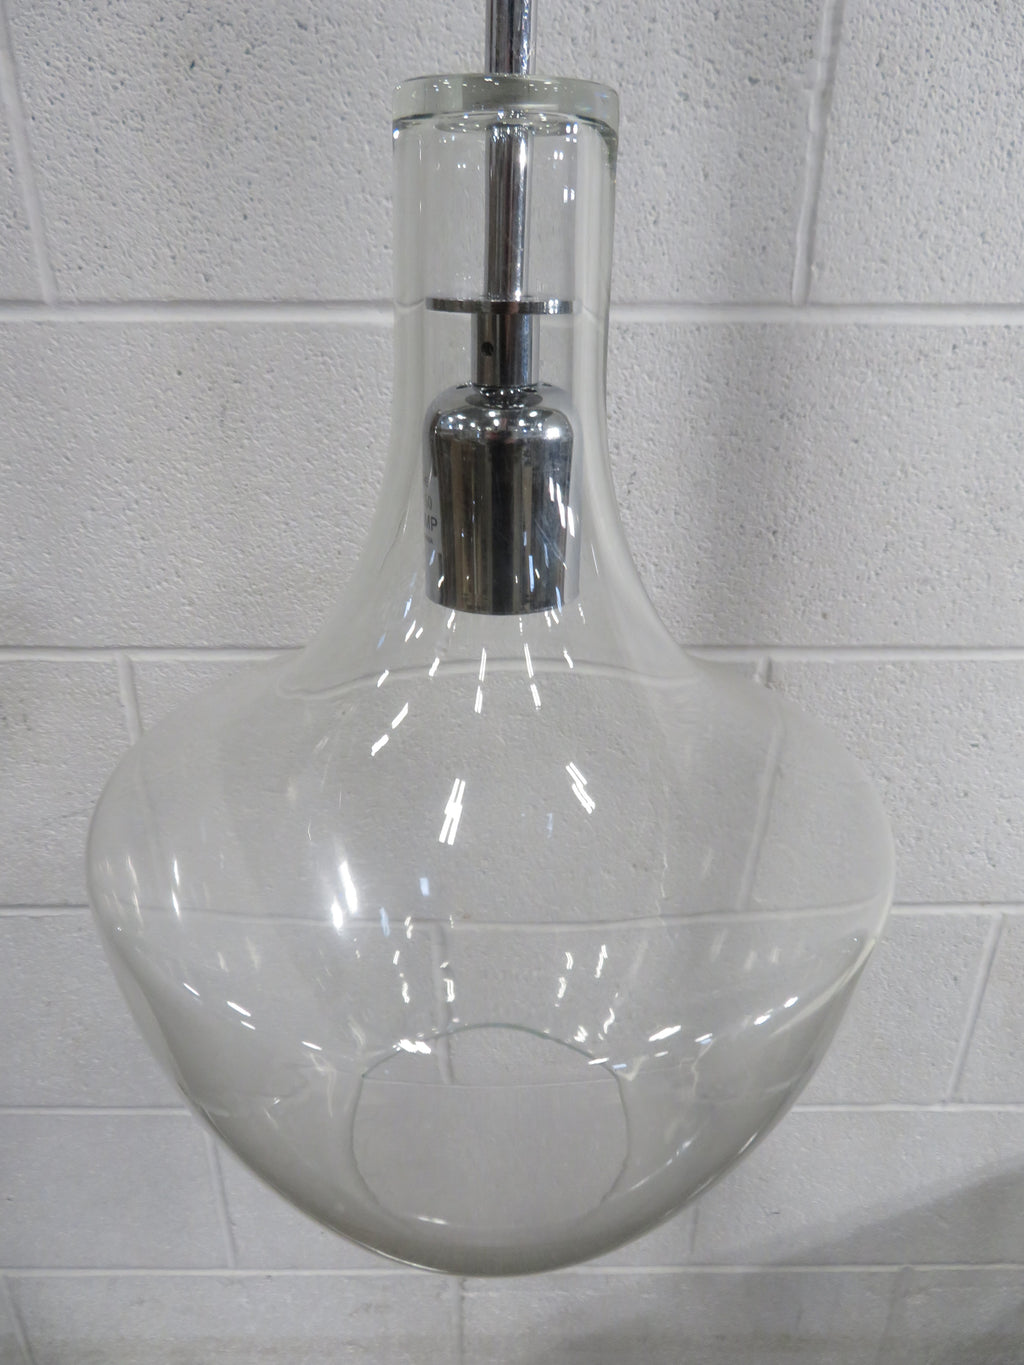 1-Light Pendant Light Fixture - Glass Shade